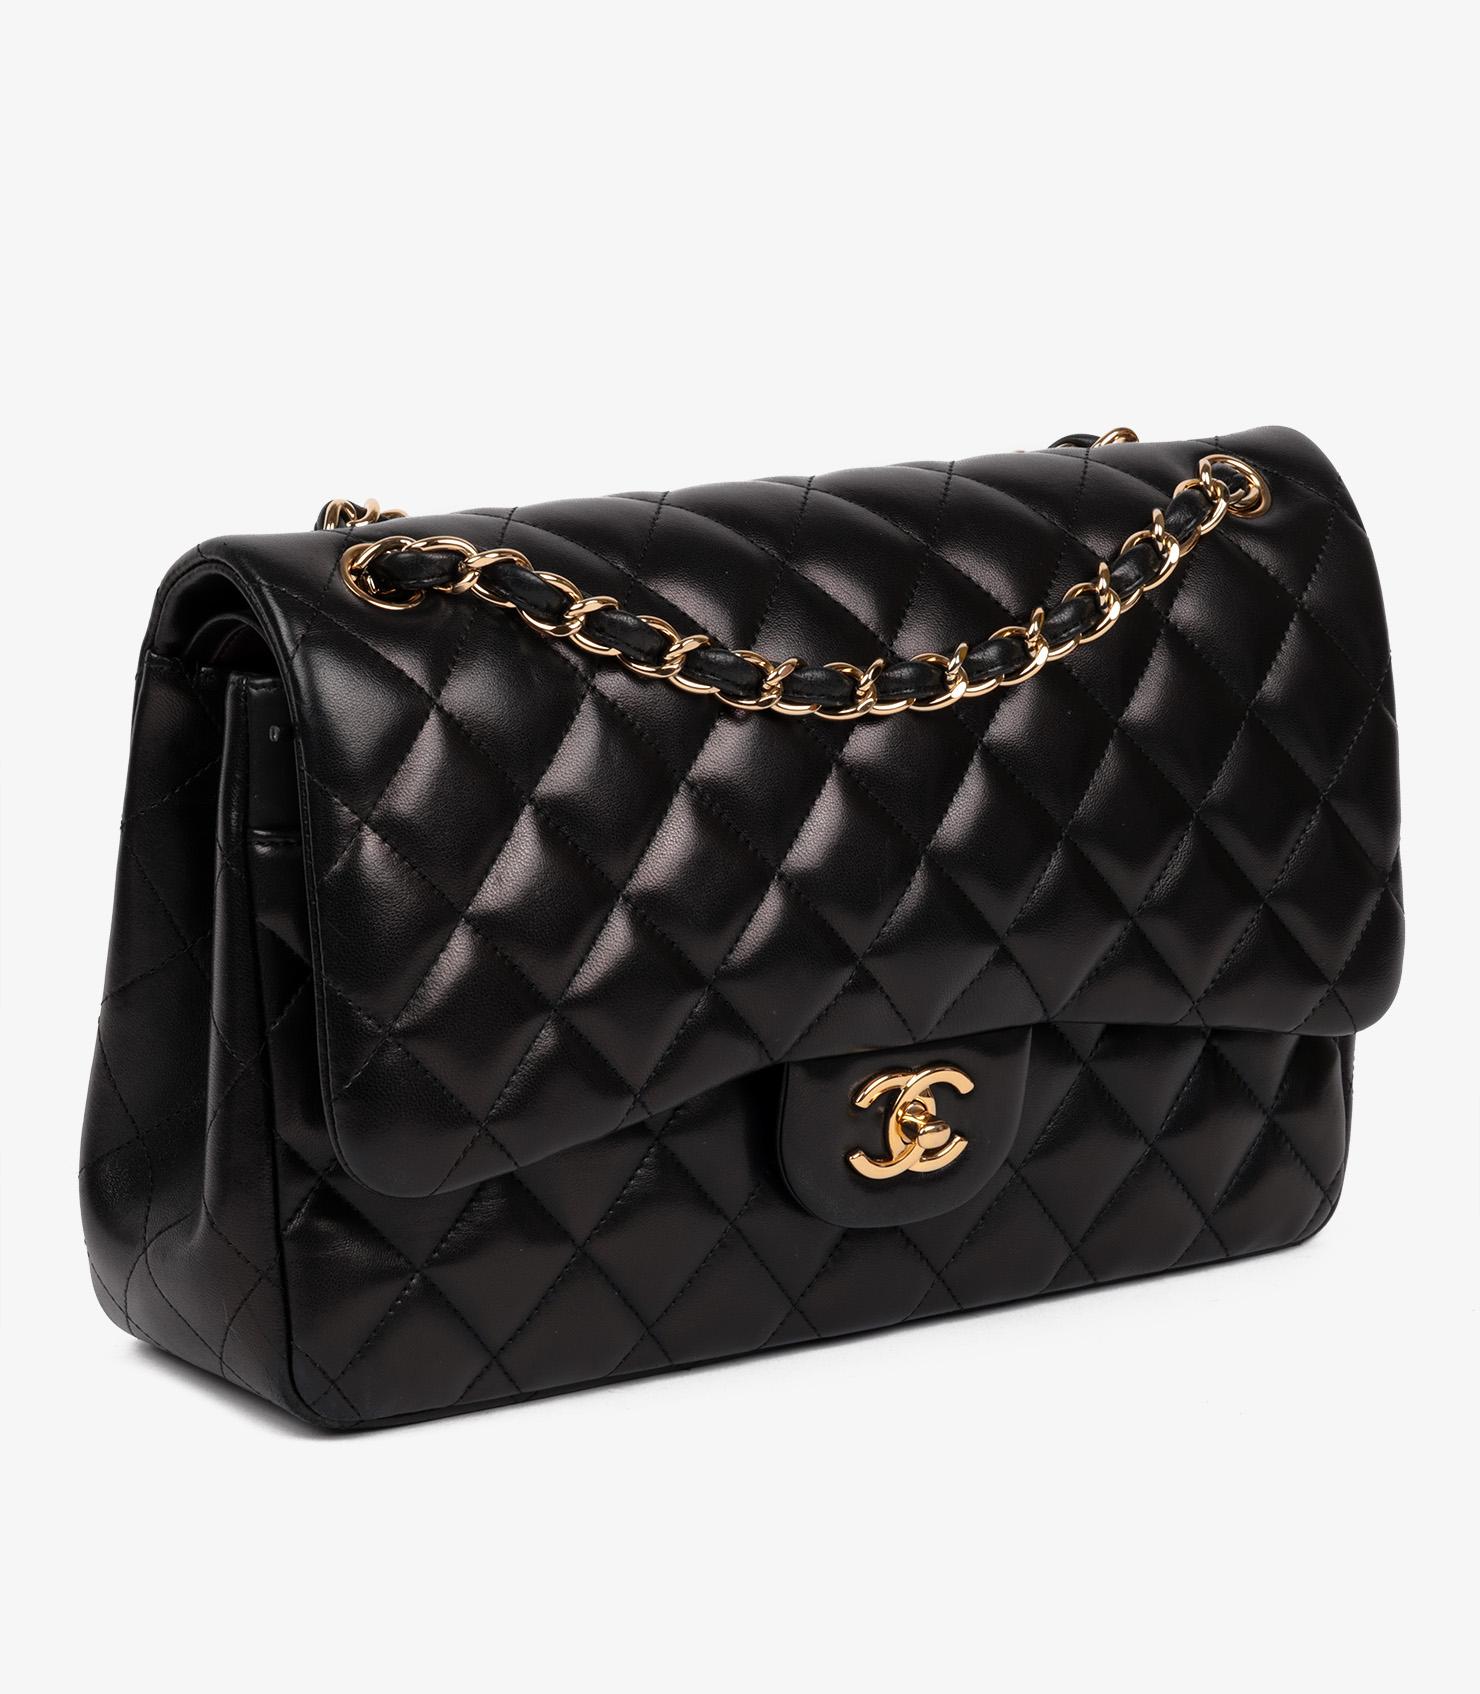 Marque : Chanel
Modèle- Jumbo Classic Double Flap Bag
Type de produit- Épaule
Numéro de série - 16******
NO AGE - Circa 2012
Accompagné de : sac à poussière Chanel, carte d'authenticité
Couleur - Noir
Quincaillerie - Or
Matière(s) - Cuir